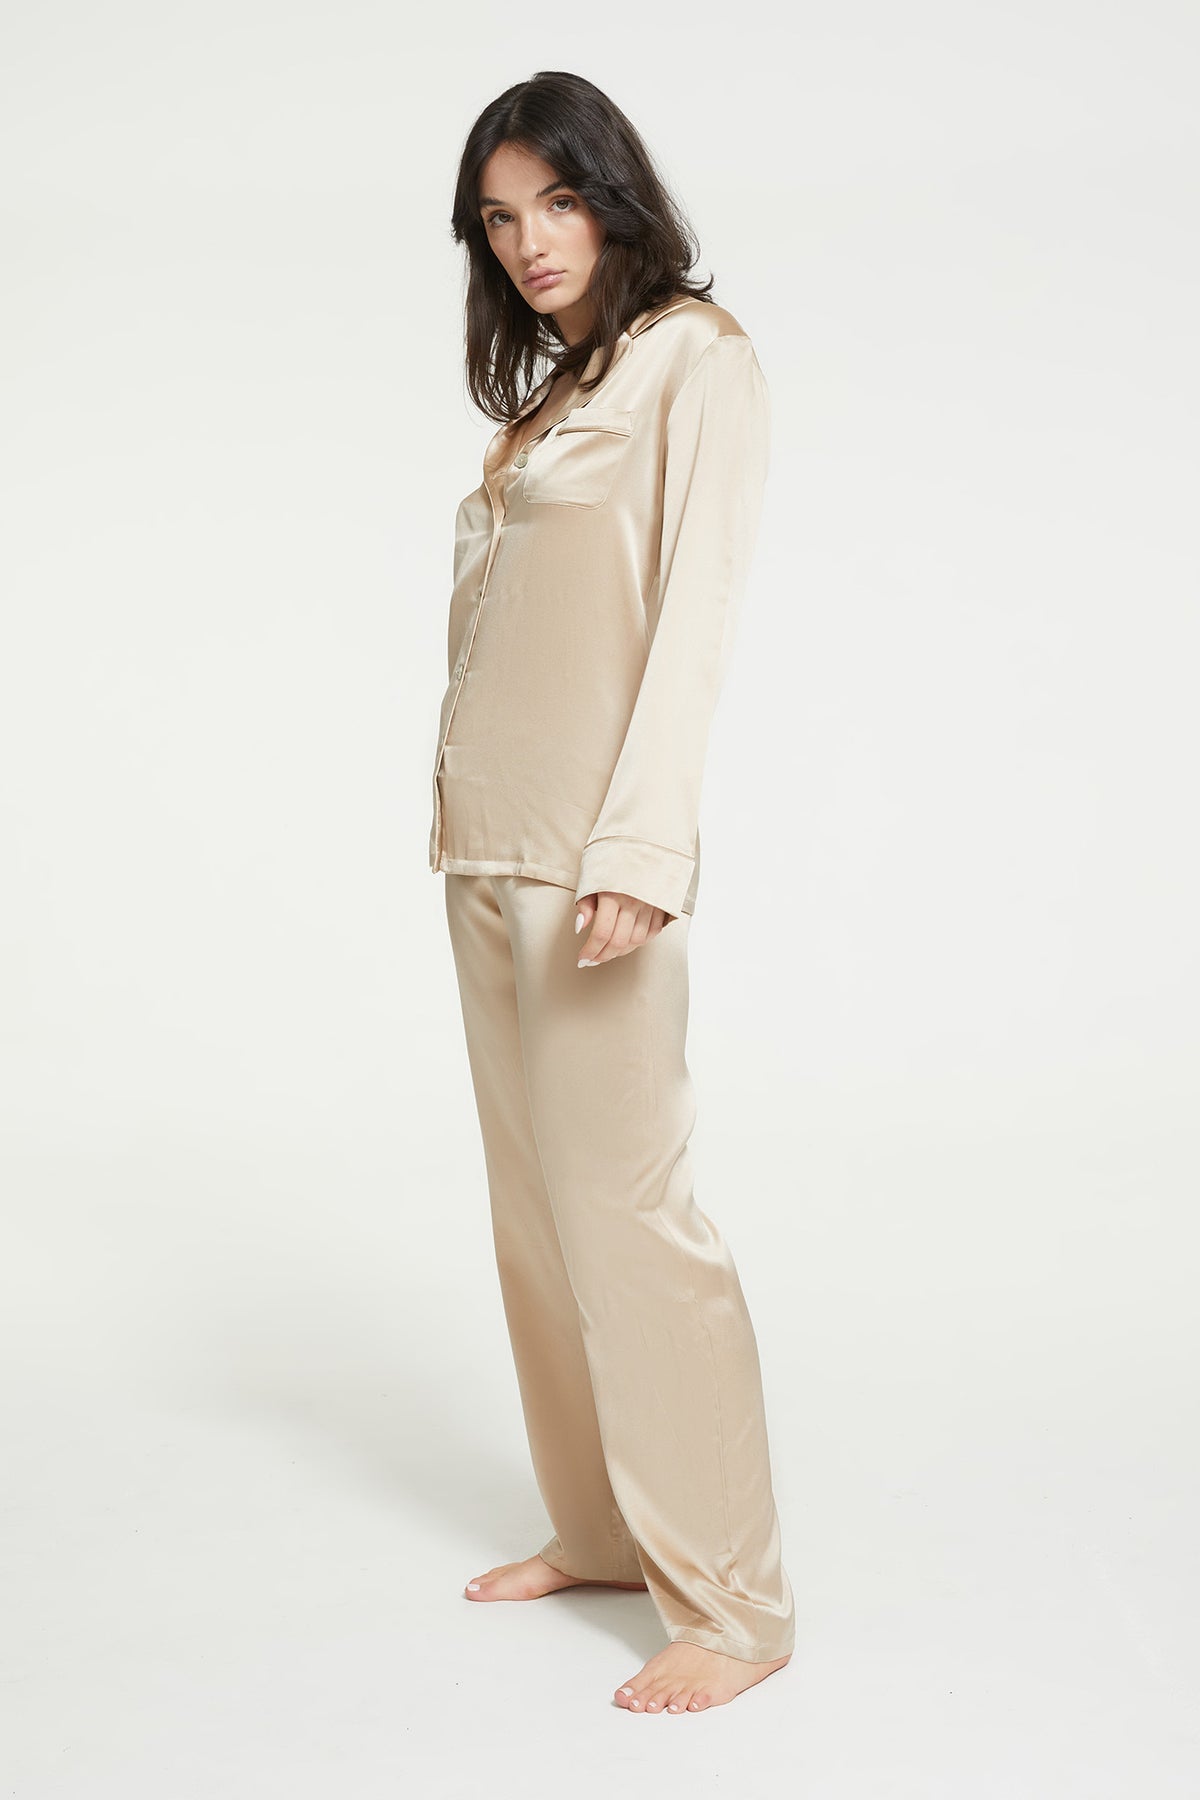 Fine Finishes Pyjama in Mink with 100% Silk from Ginia Sleepwear